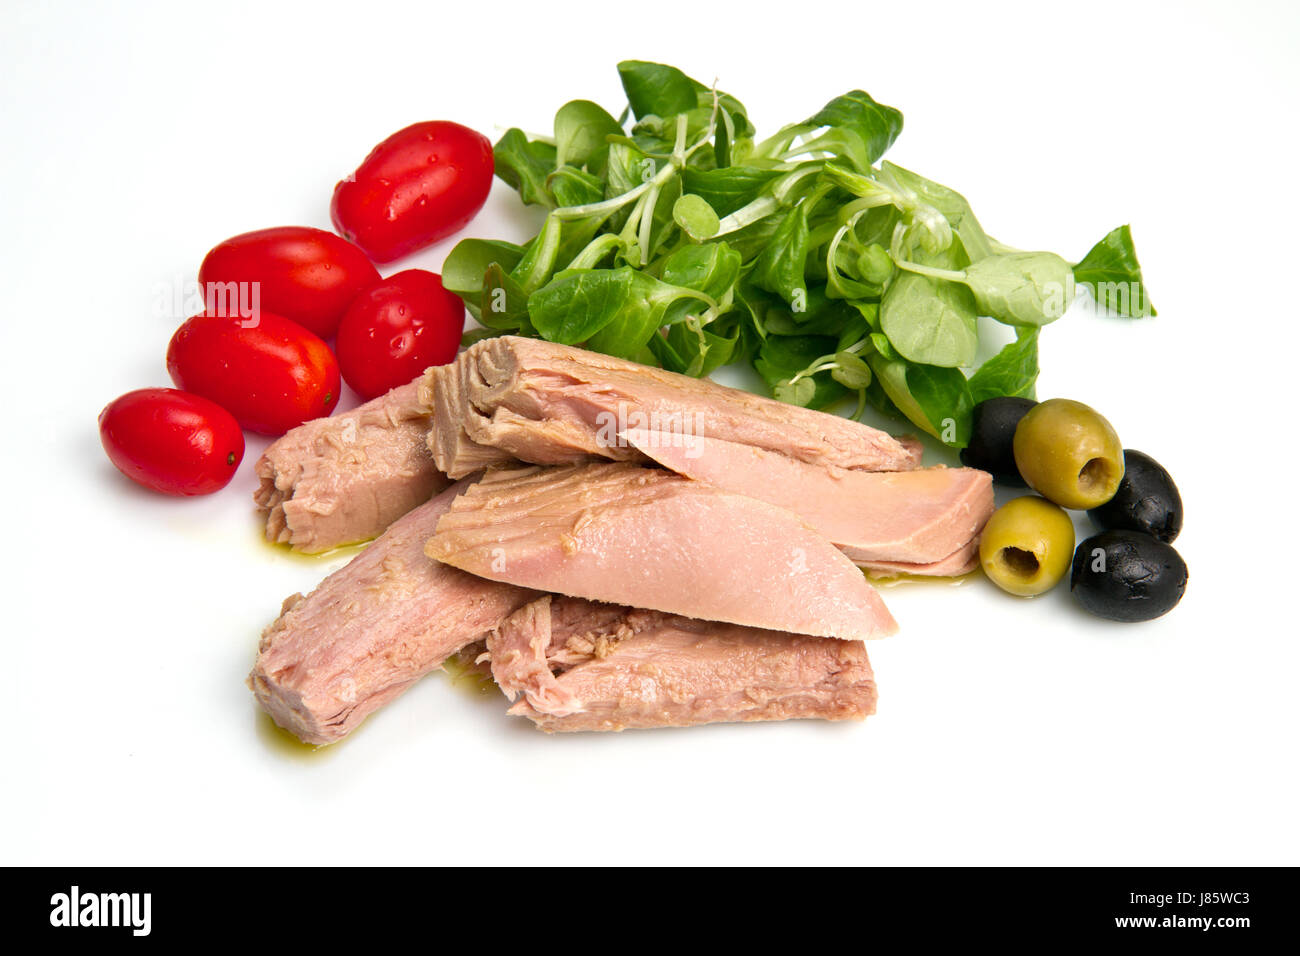 Il cibo del ristorante aliment sale salute foglia Vitamine Vitamine verde acqua della fame Foto Stock